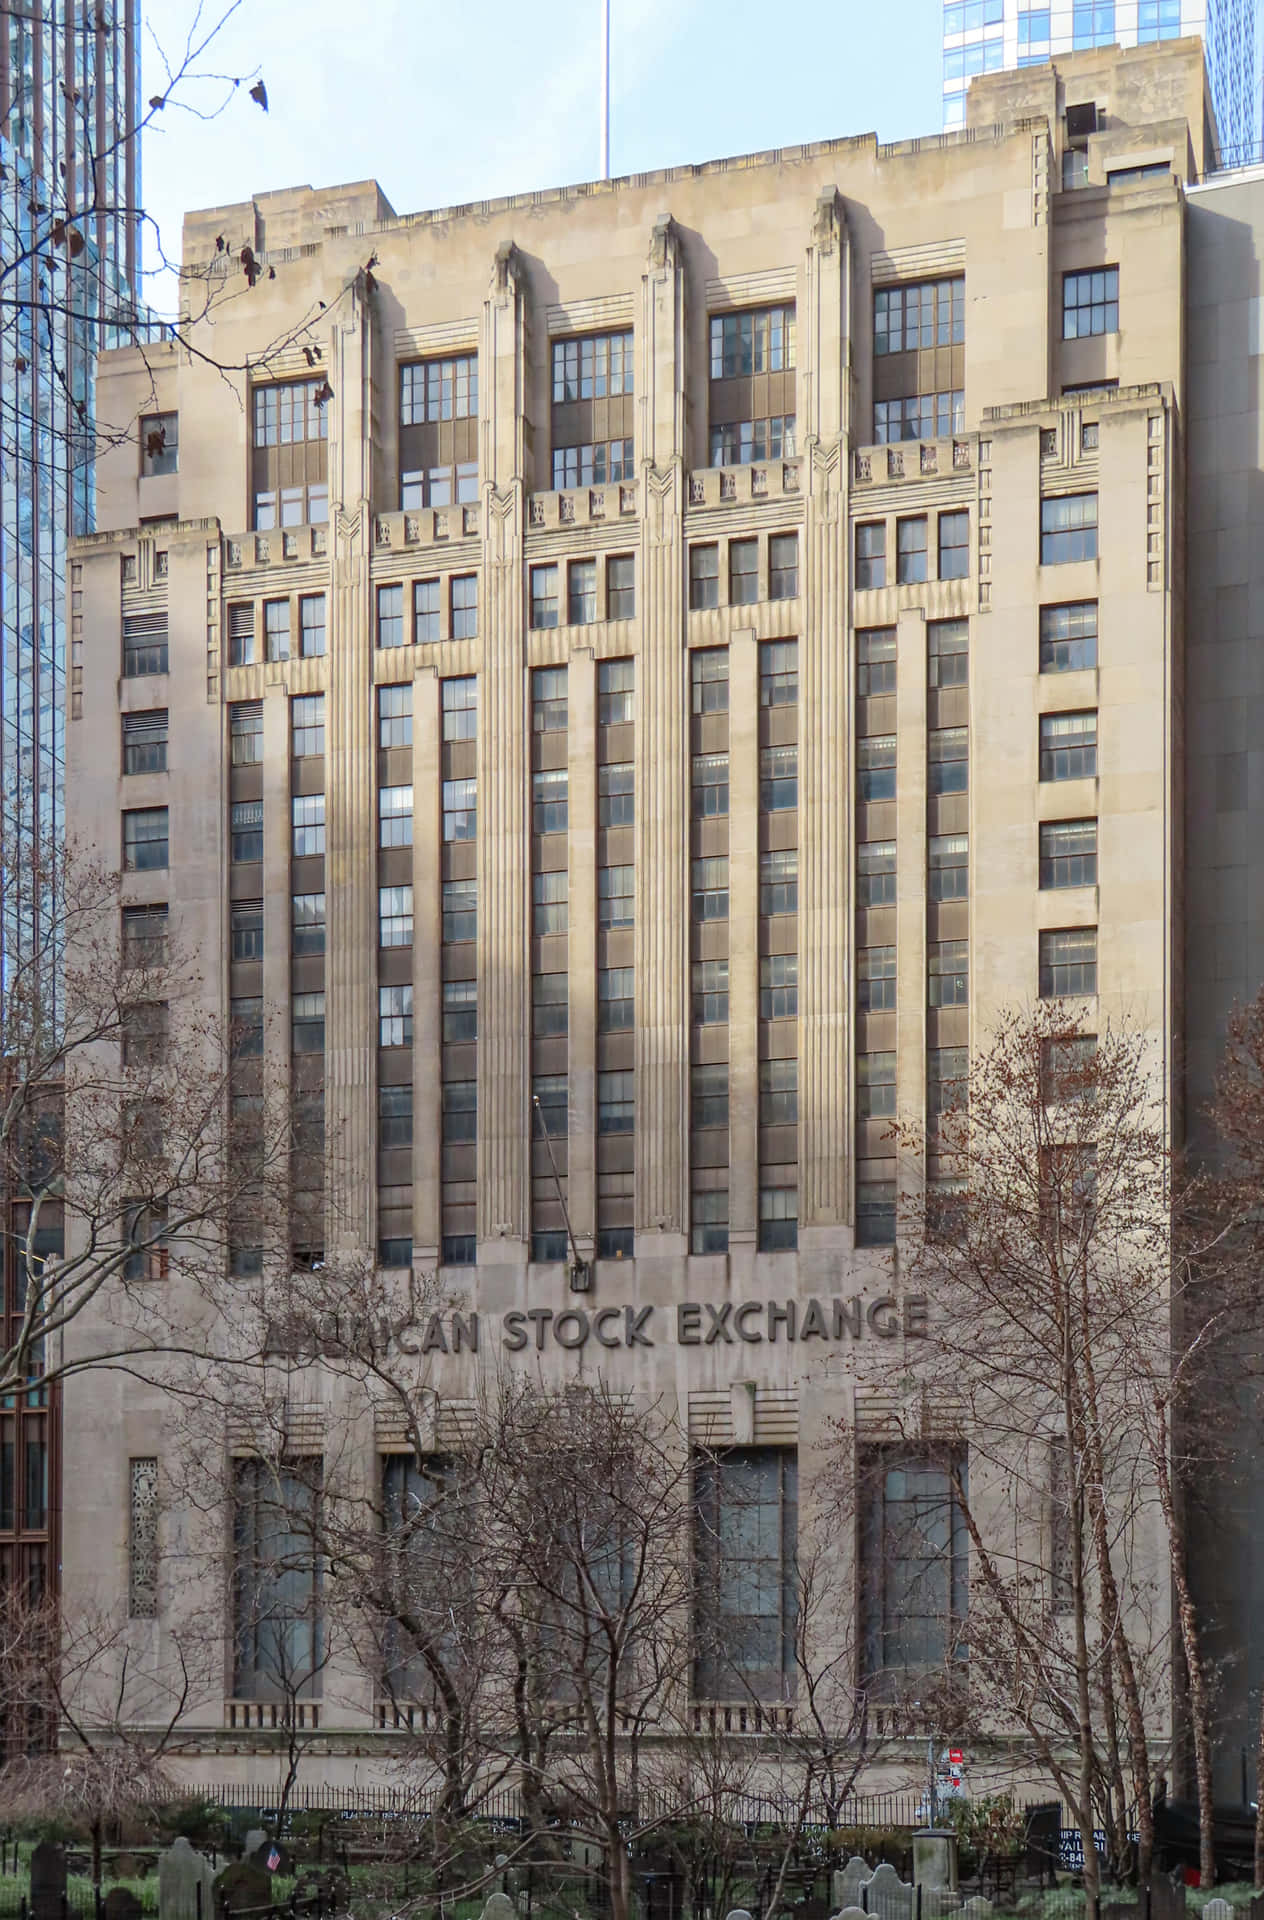 Bilderder American Stock Exchange